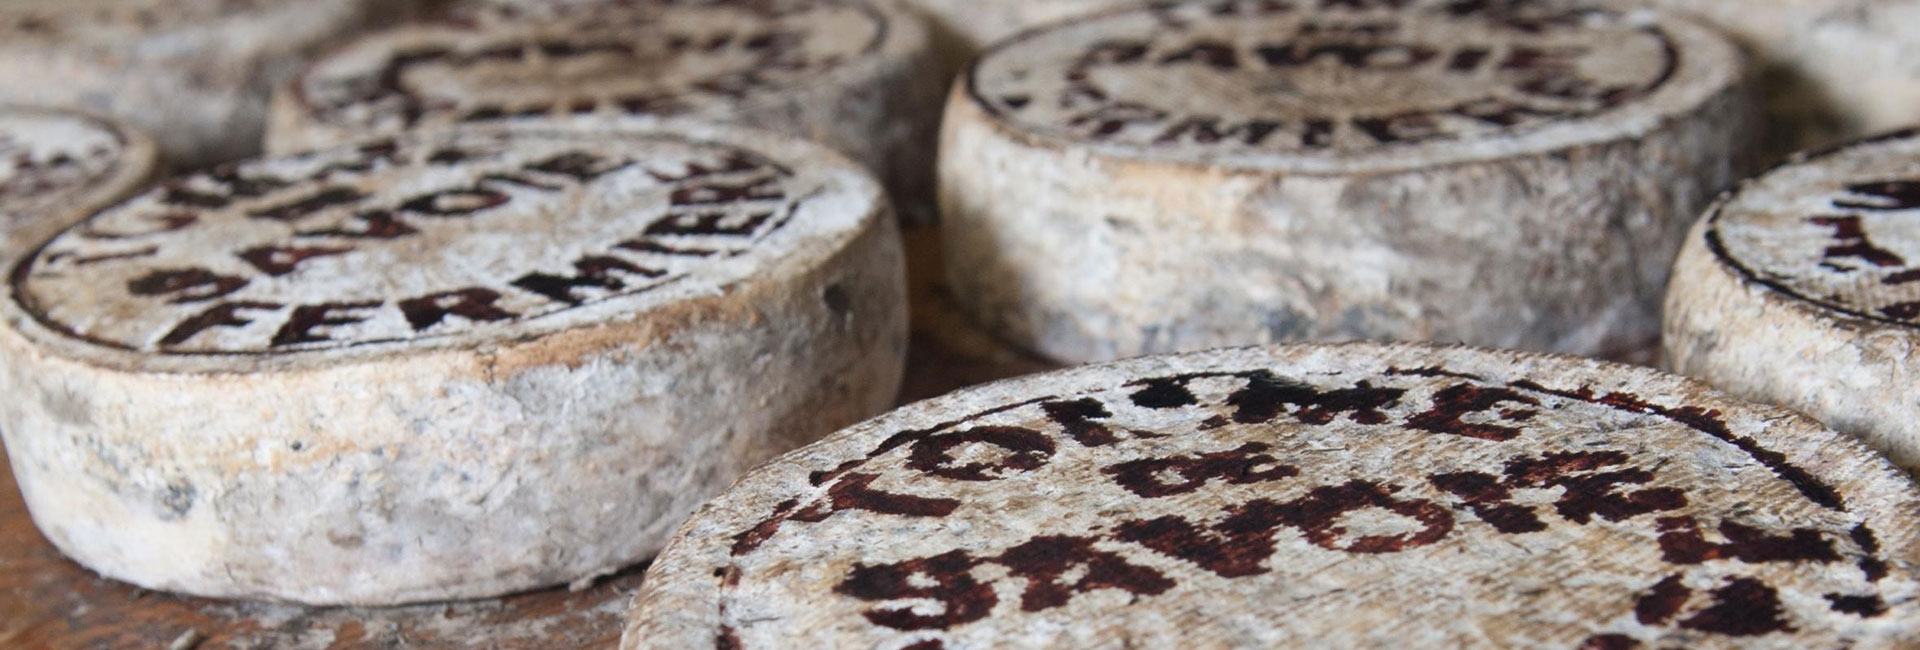 round-blocks-of-cheese